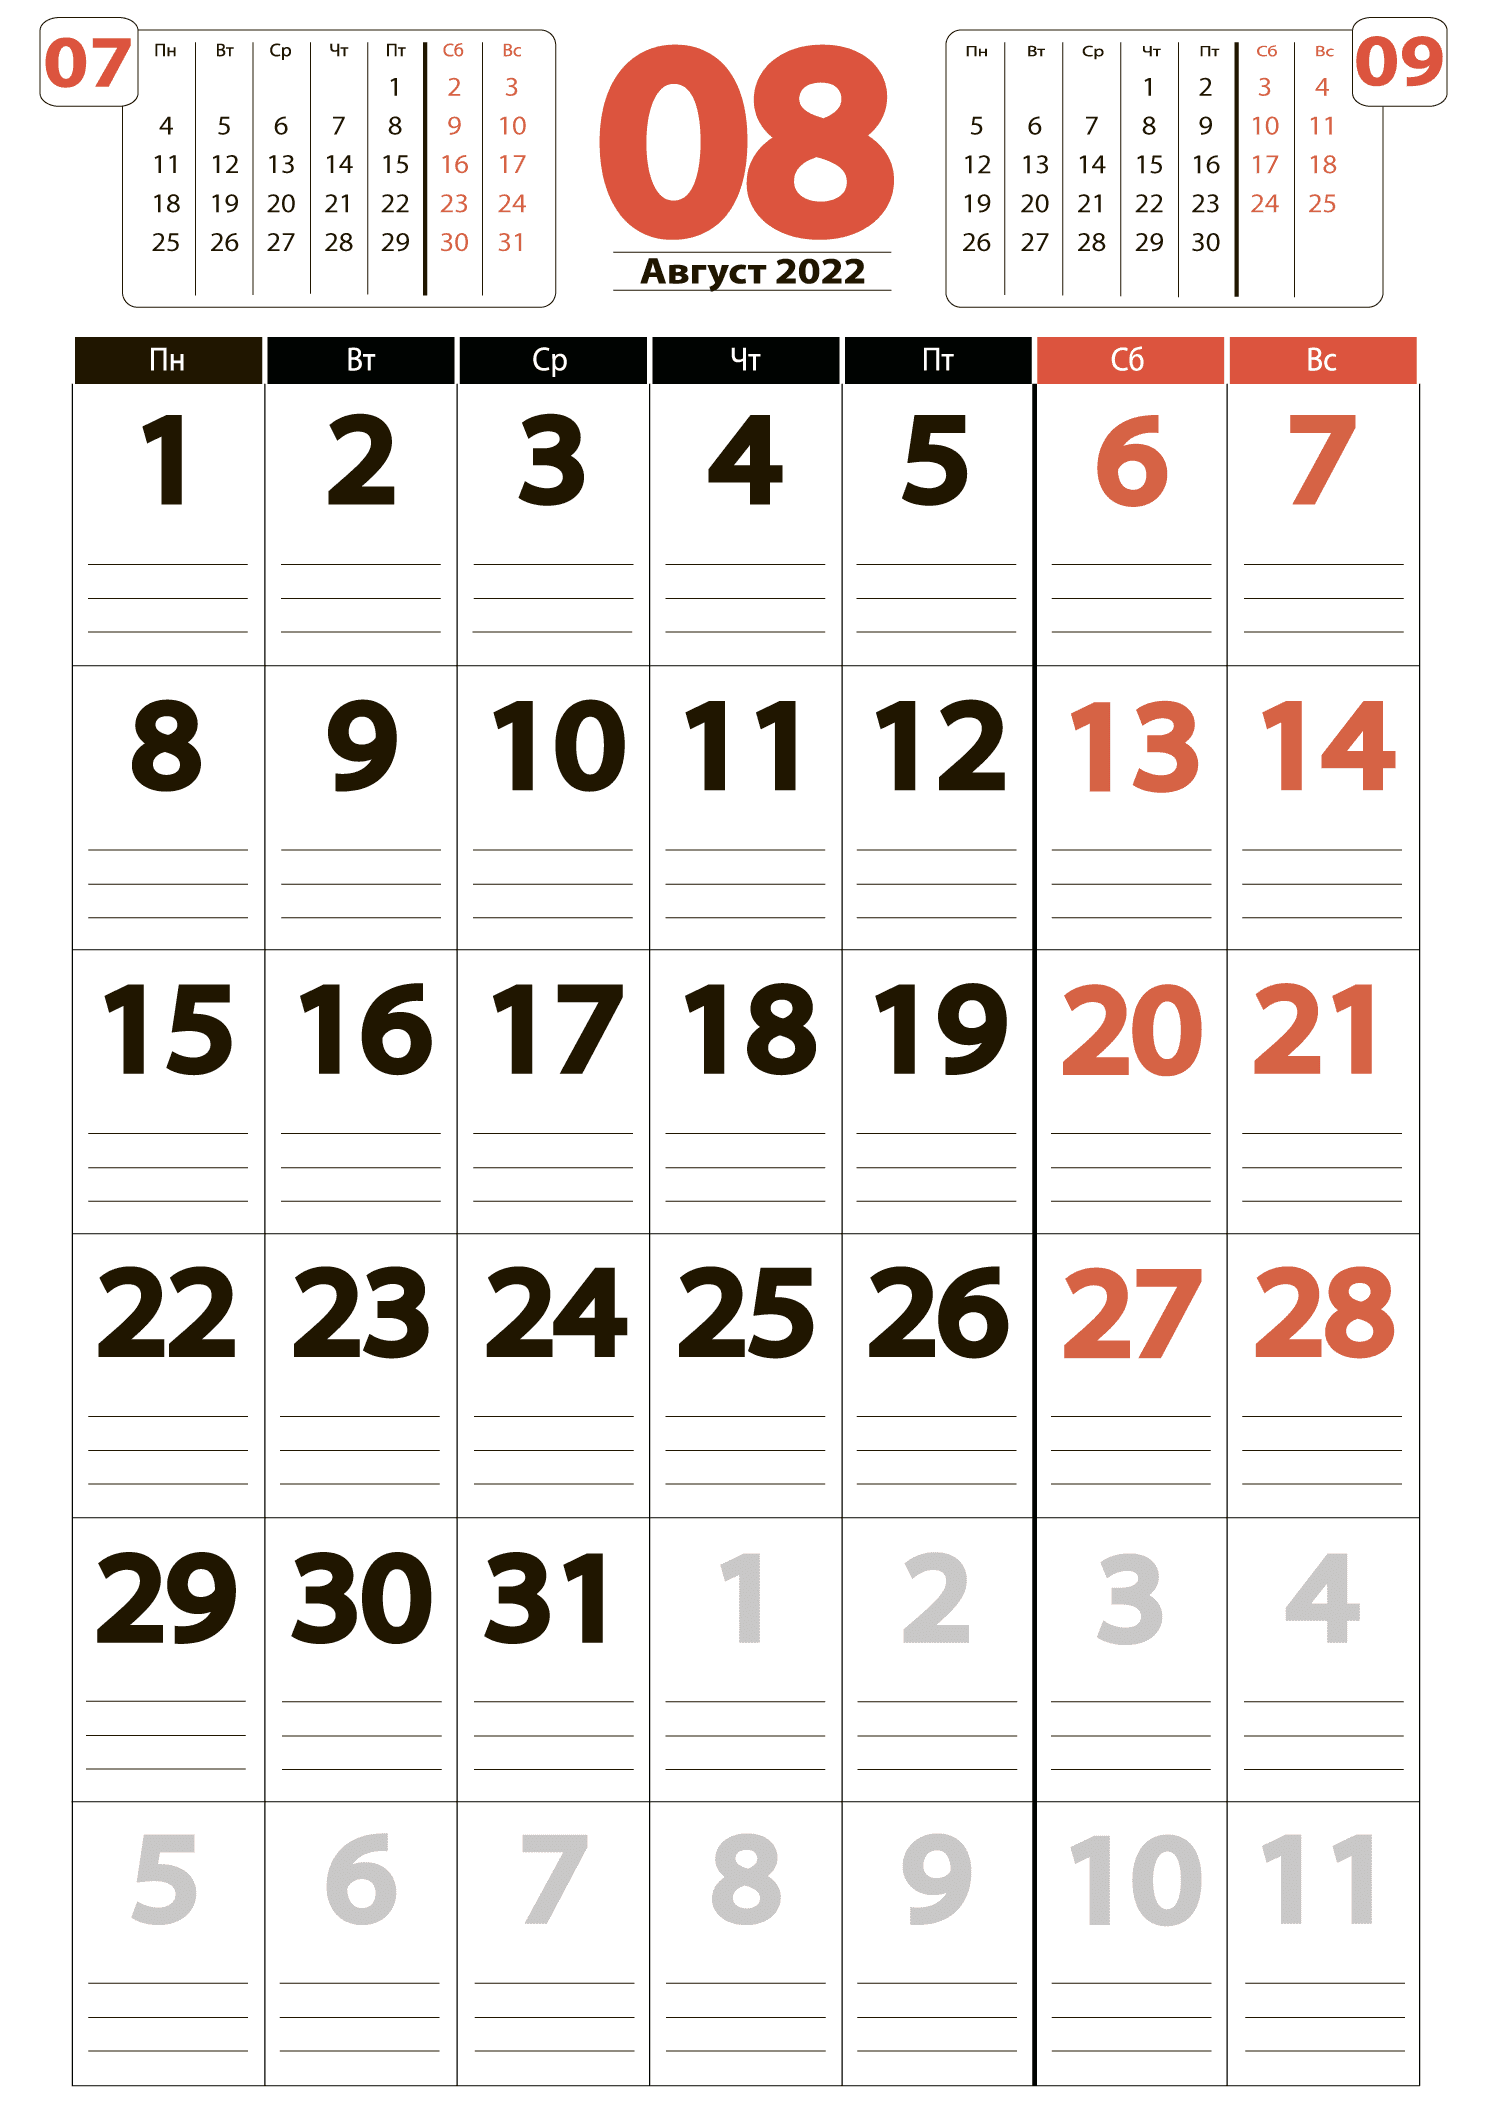 Печать крупного календаря на август 2022